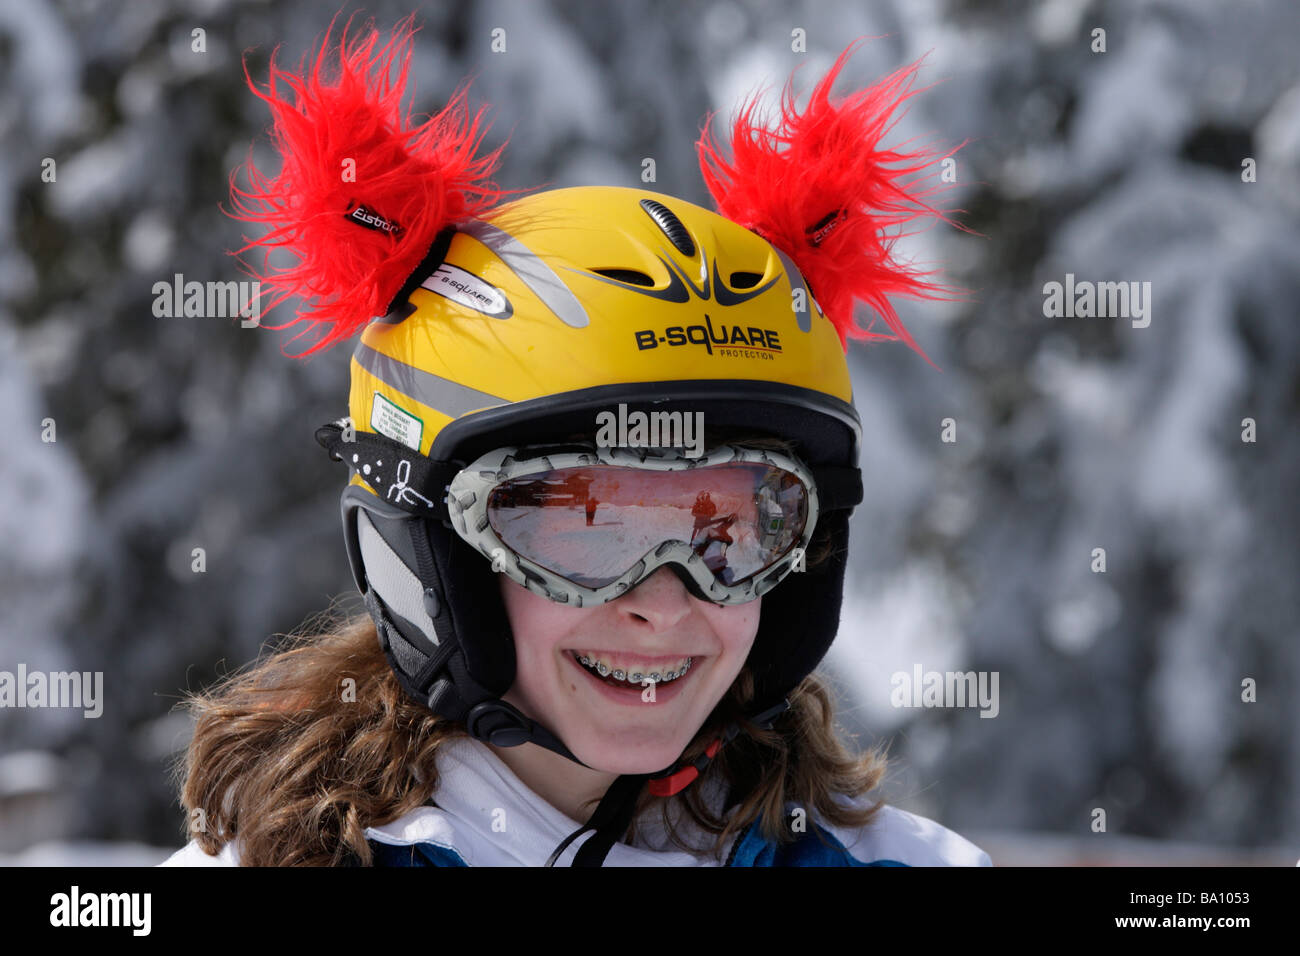 Porträt einer jungen Skirennläuferin mit Ski Helm, Steiermark, Österreich  Stockfotografie - Alamy